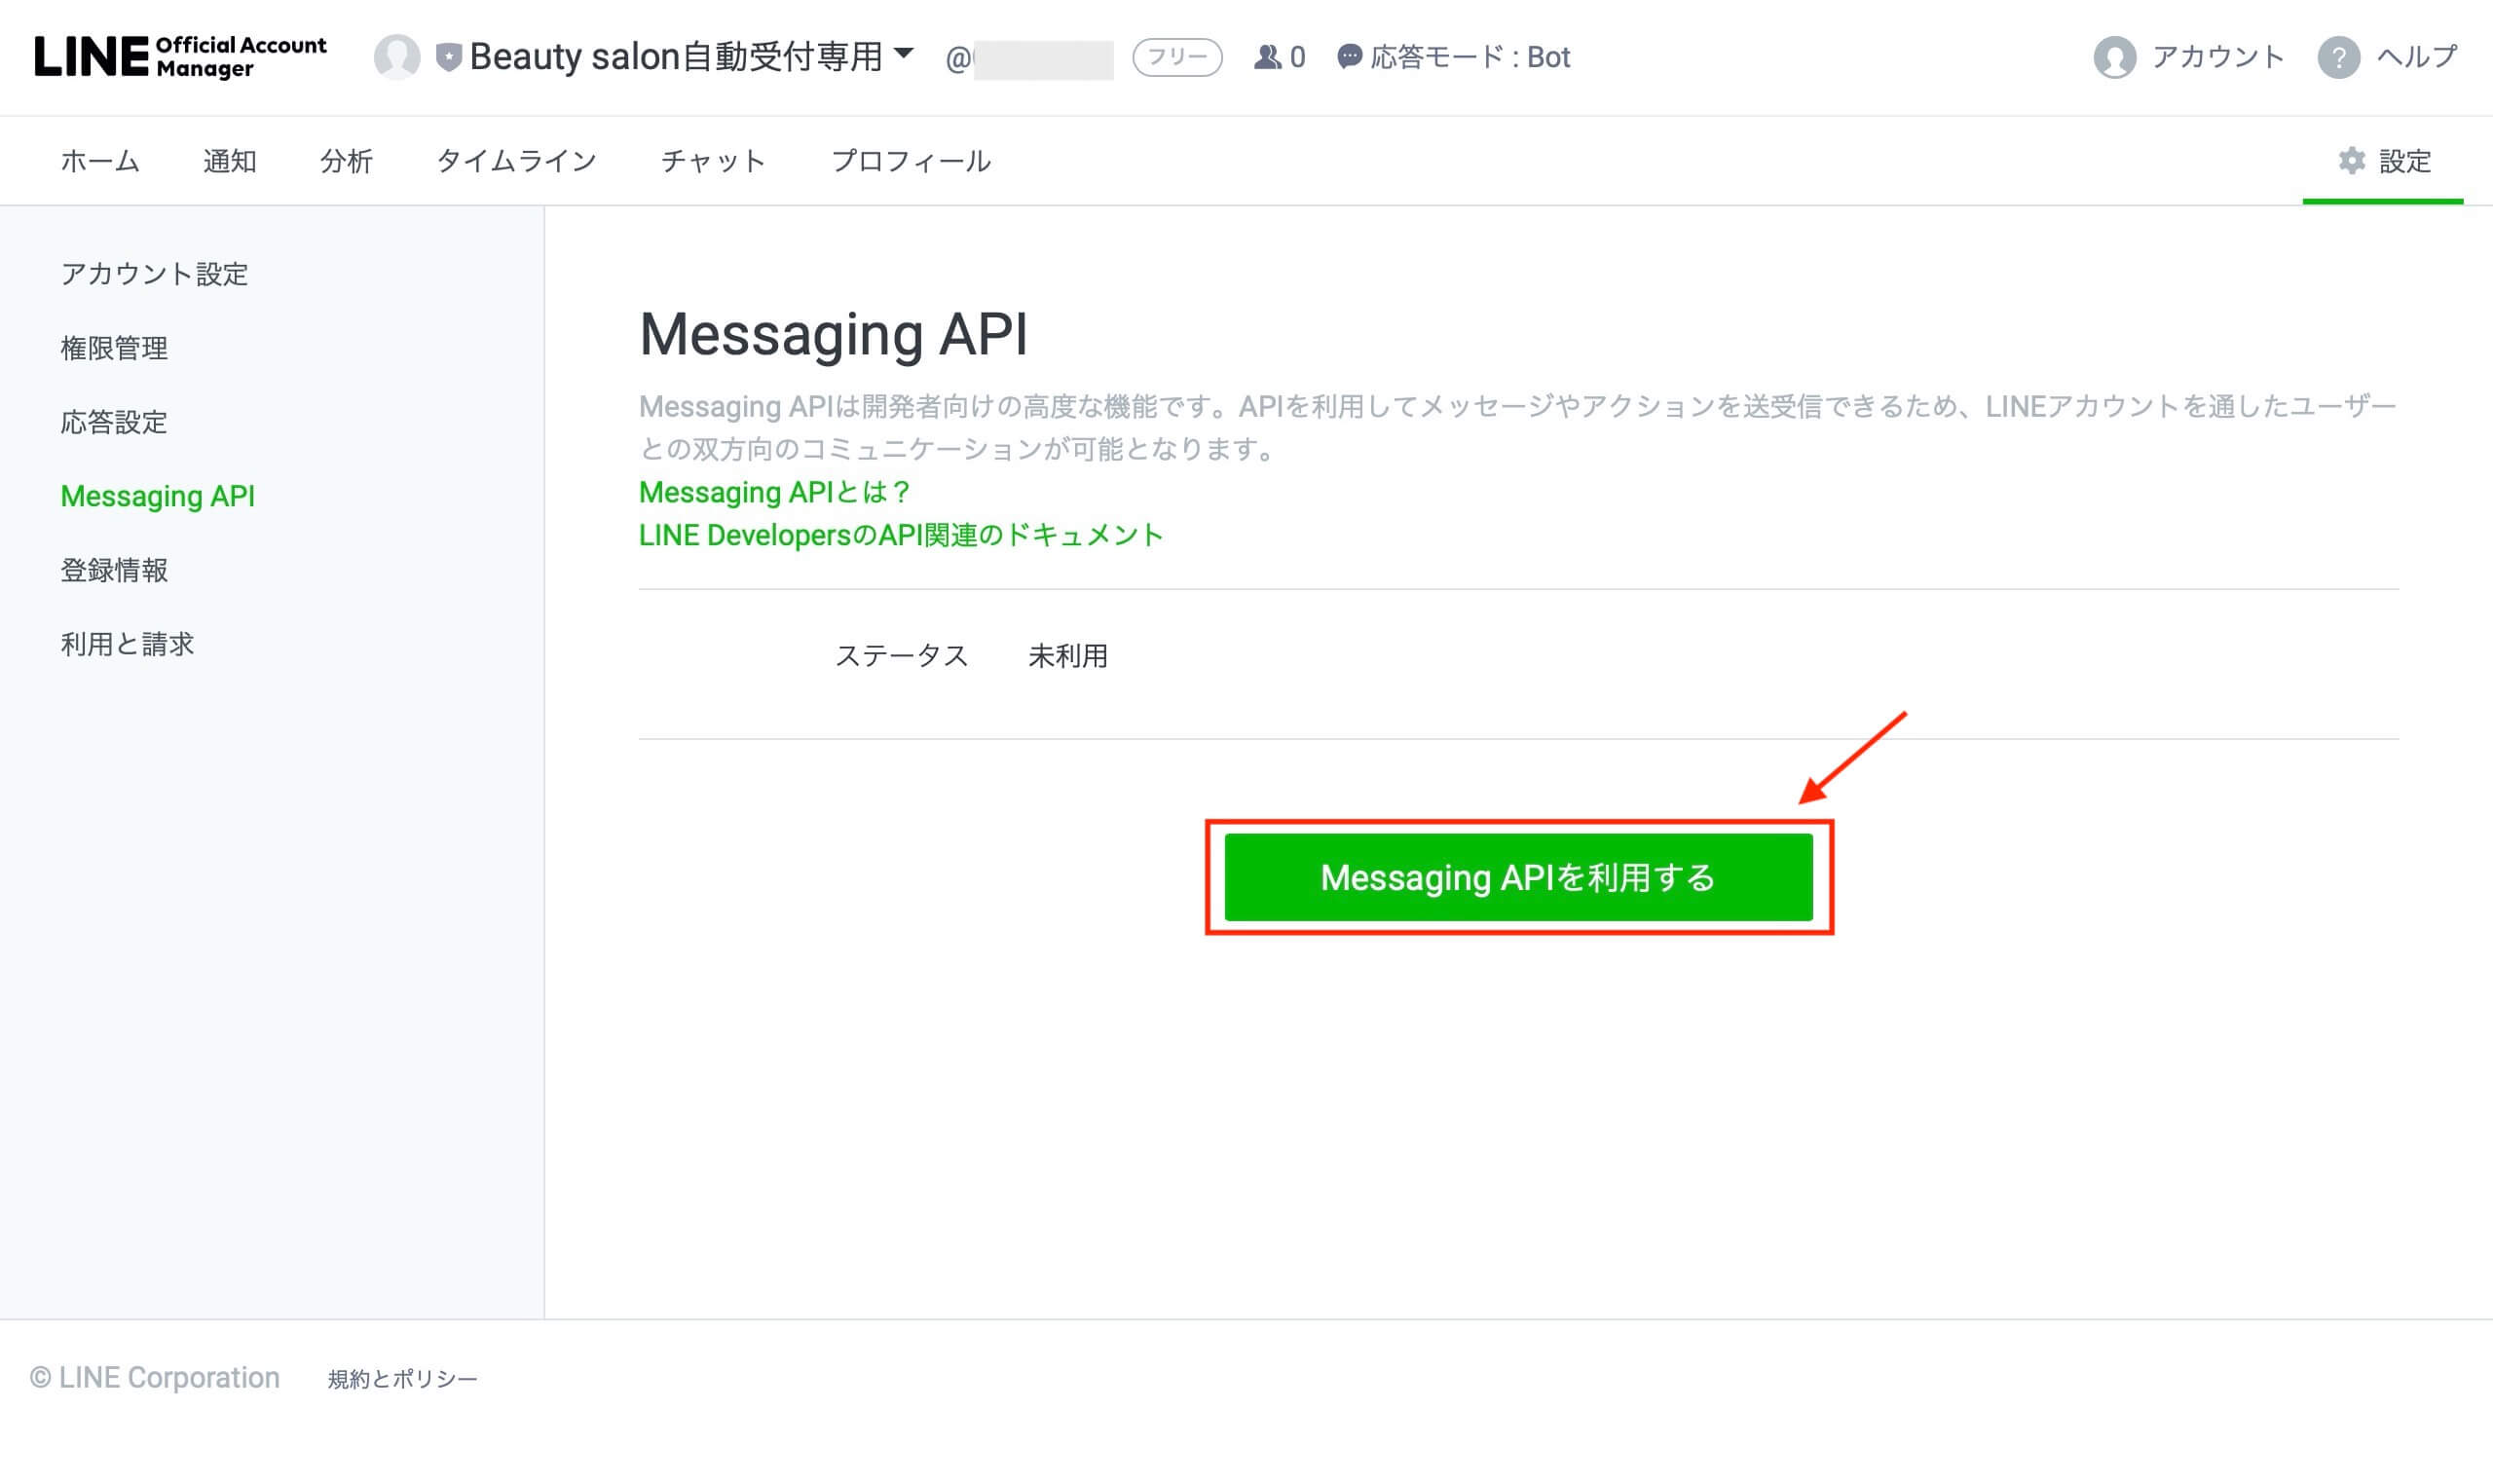 [Messaging APIを利用する] をクリックします。